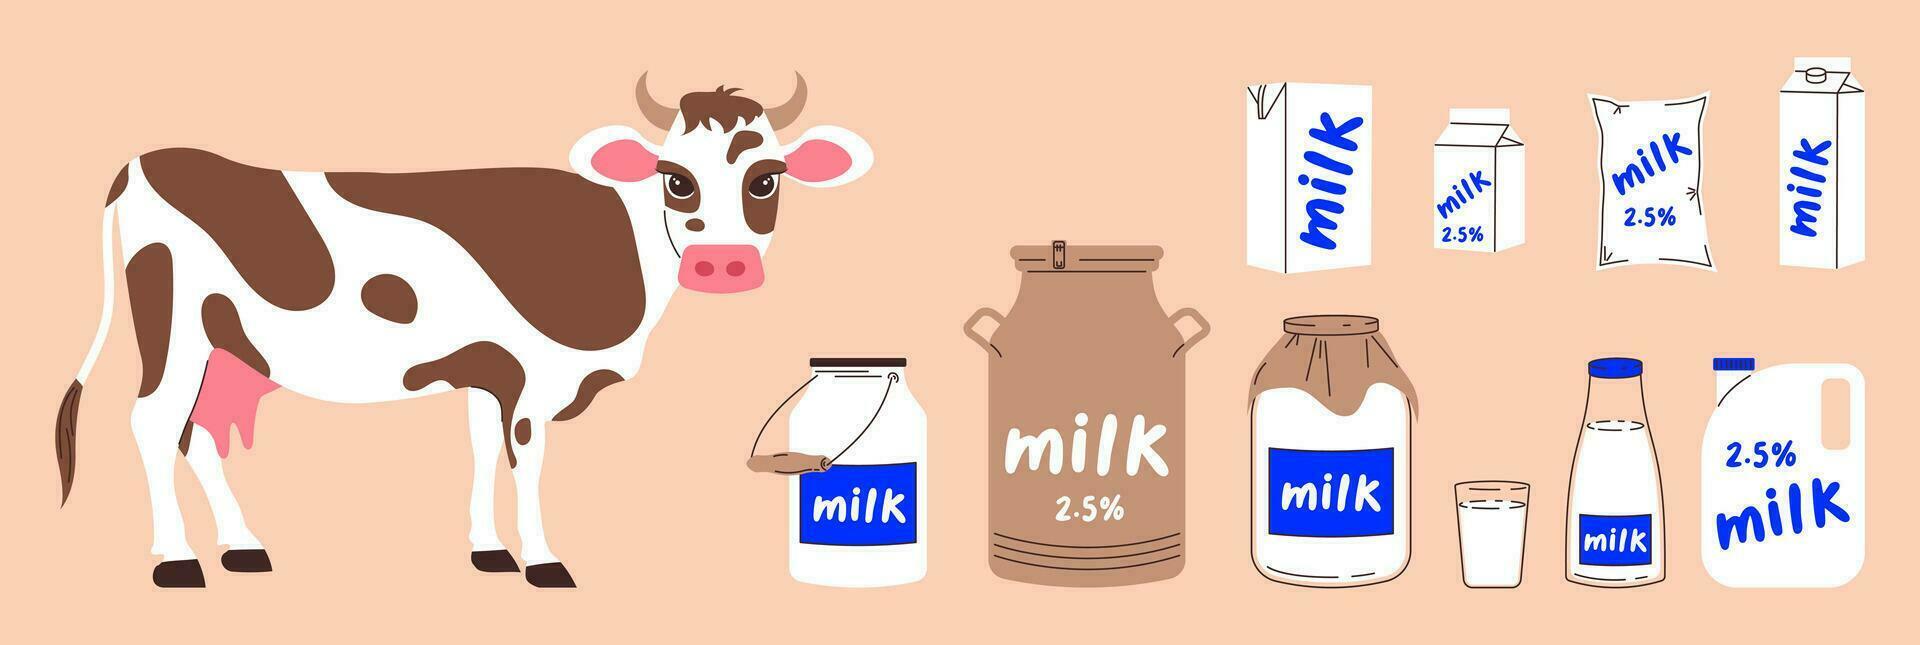 Vektor Clip Kunst auf das Thema von Molkerei Produkte. süß Kuh und anders Pakete von Milch, Dreiliter Krug, dürfen, Eimer, Glas, Kanister von Milch und andere Papier Verpackung zum Milch.